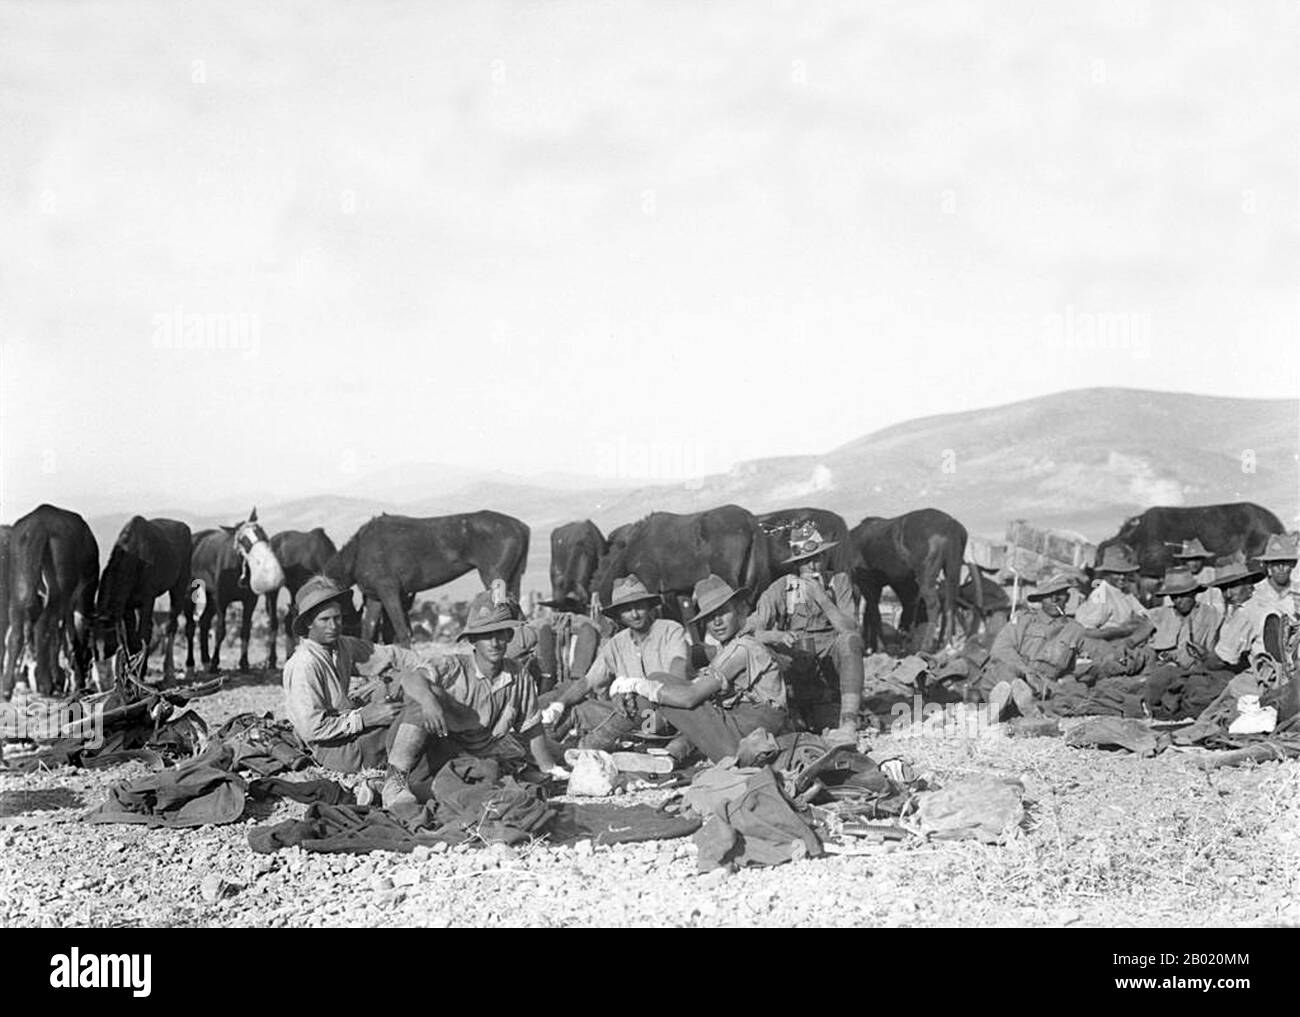 La battaglia di Megiddo (turco: Megiddo Muharebesi), conosciuta anche in turco come il Nablus Hezimeti ('Rout of Nablus'), fu combattuta tra il 19 e il 25 settembre 1918, sulla piana di Sharon, di fronte a Tulkarm, Tabor e Arara nelle colline della Giudea e sulla piana di Esdralon a Nazareth, Afulah, Beisan, Jenin e Samakh. Durante la vasta battaglia di Sharon, quattro corpi furono schierati contro tre eserciti contrapposti. La prima linea dell'Impero Ottomano fu spezzata e catturata dalla fanteria dell'Impero britannico, consentendo alla cavalleria di circondare successivamente quasi l'Ottava ottomana e la settima Armie Foto Stock